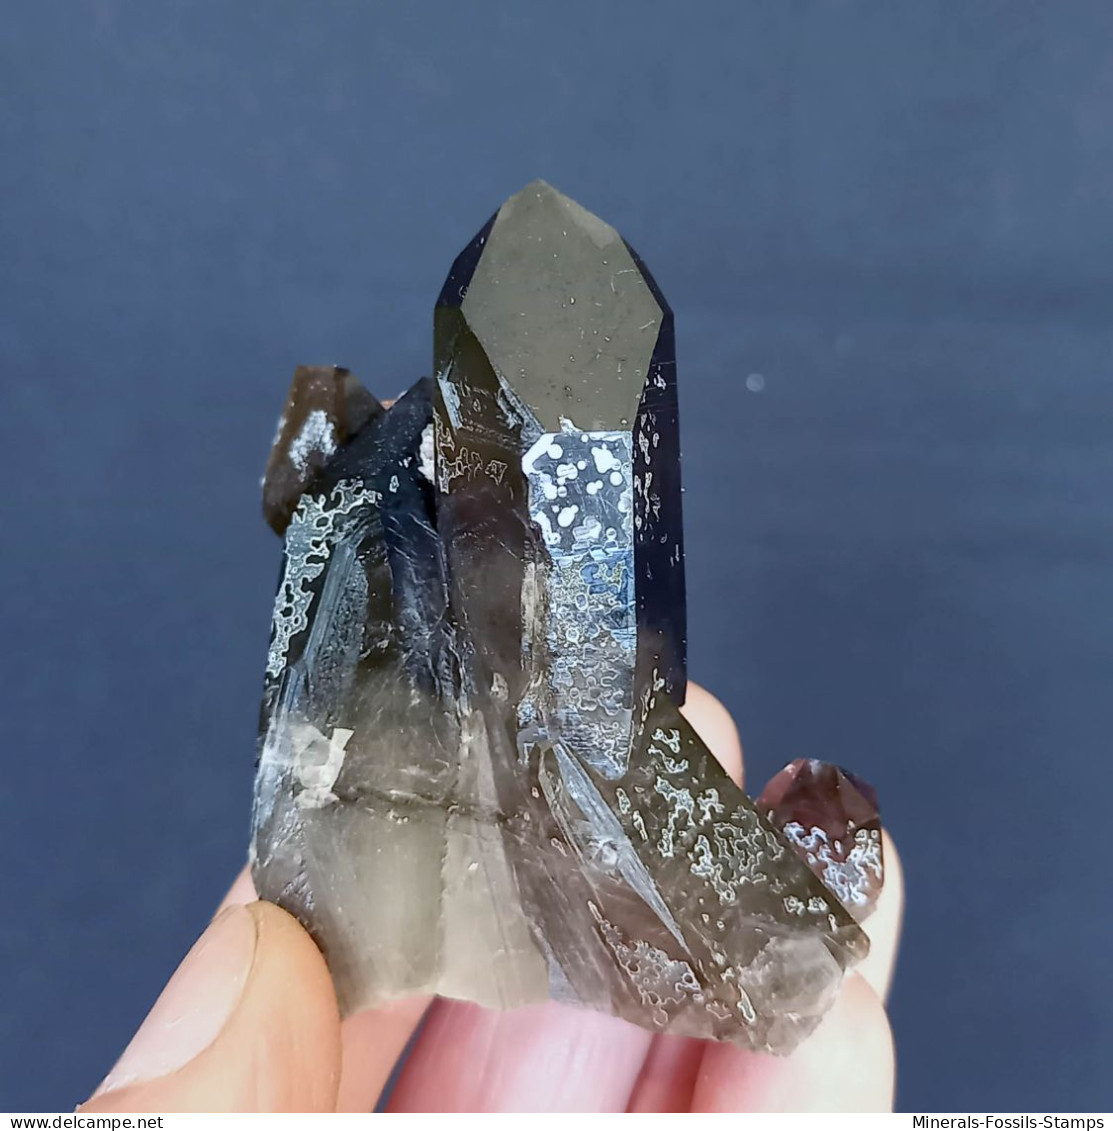 #04 – SCHÖNE MORIONE QUARZ Kristalle (Kara-Oba, Moiynkum, Jambyl, Kasachstan) - Minerals